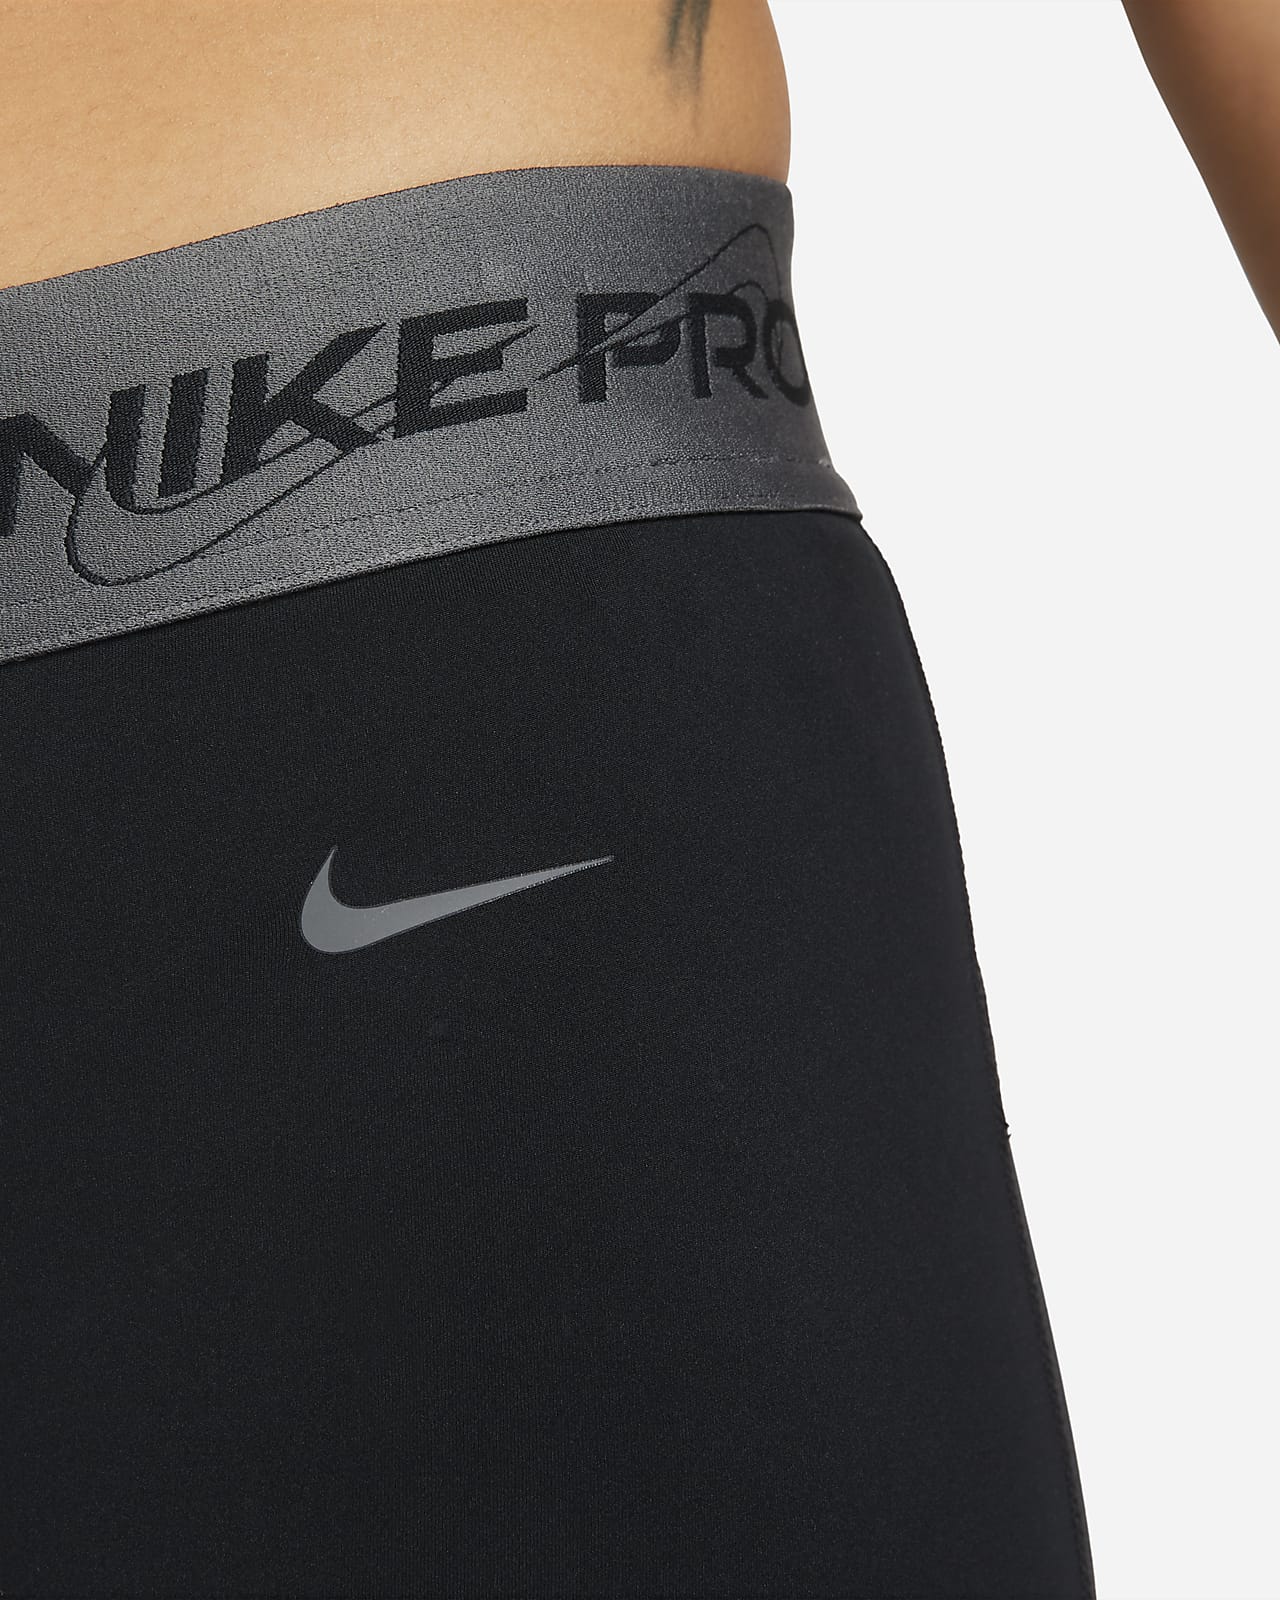 Nike damskie czarne legginsy o długości 7/8 S - OVERLOOK : OVERLOOK